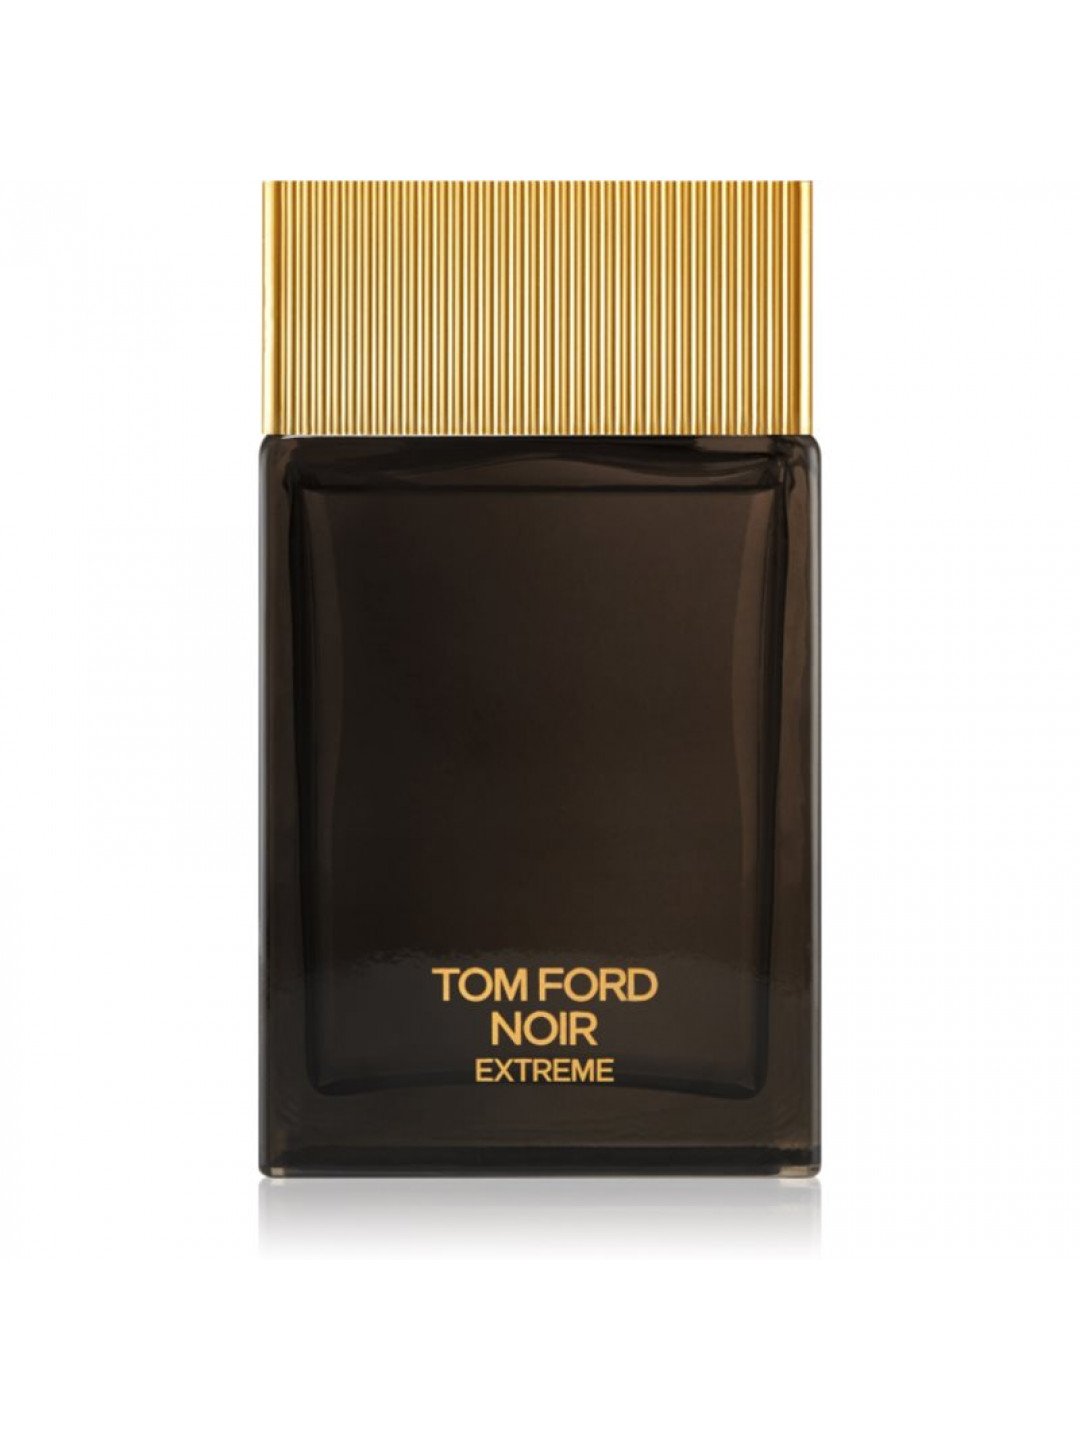 TOM FORD Noir Extreme parfémovaná voda pro muže 150 ml